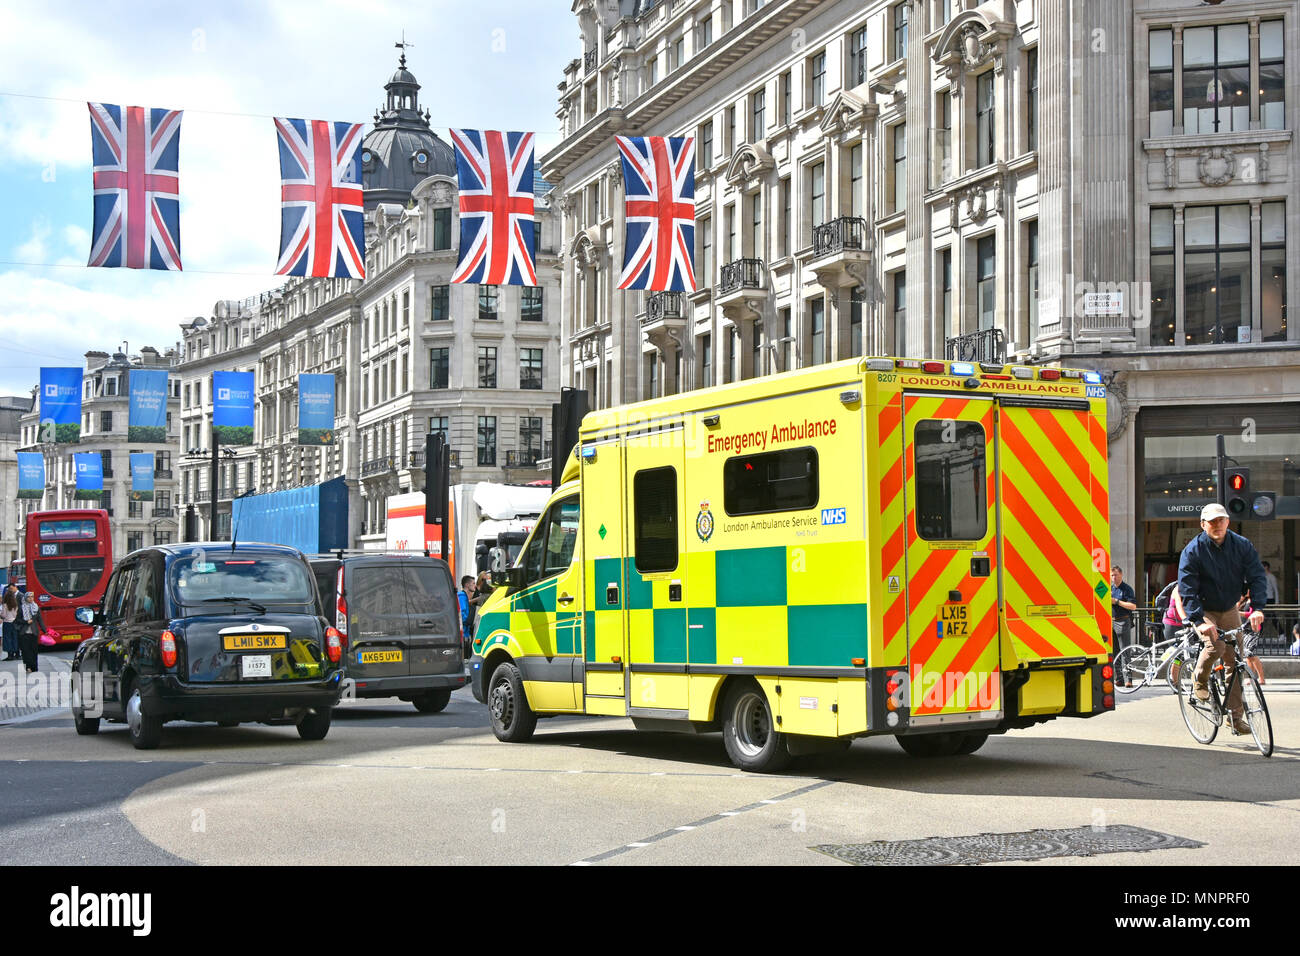 Scène de rue London NHS ambulance d'urgence dans la région de Oxford Circus embouteillage attendre d'entrer dans la rue Regent vélo cycliste à la sortie West End Union jack UK Banque D'Images